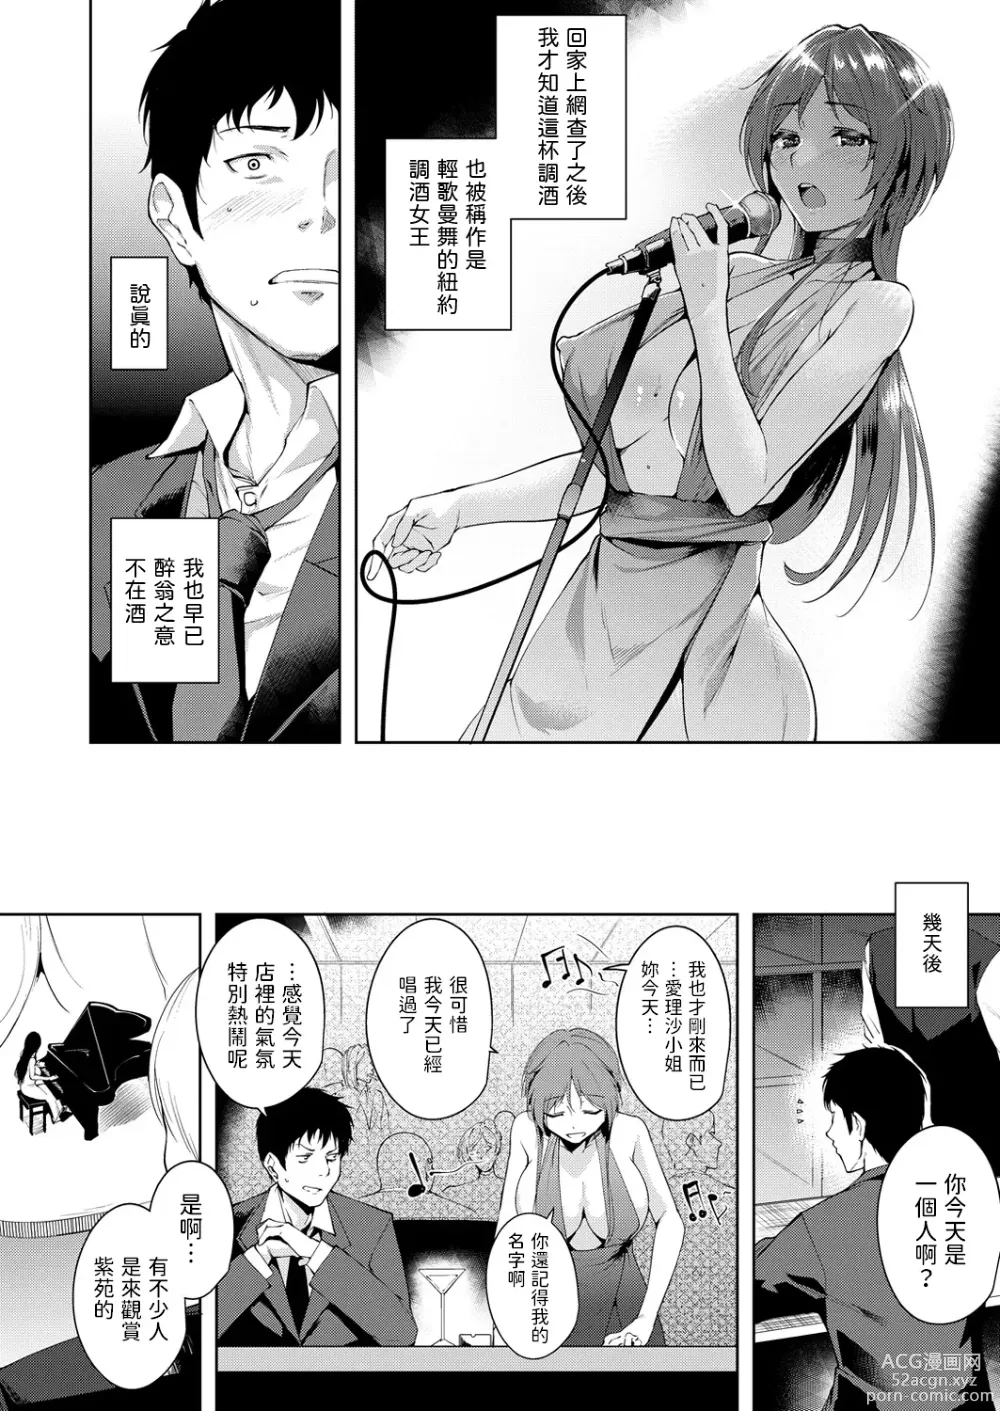 Page 4 of manga Maraschino Cherry Kiss